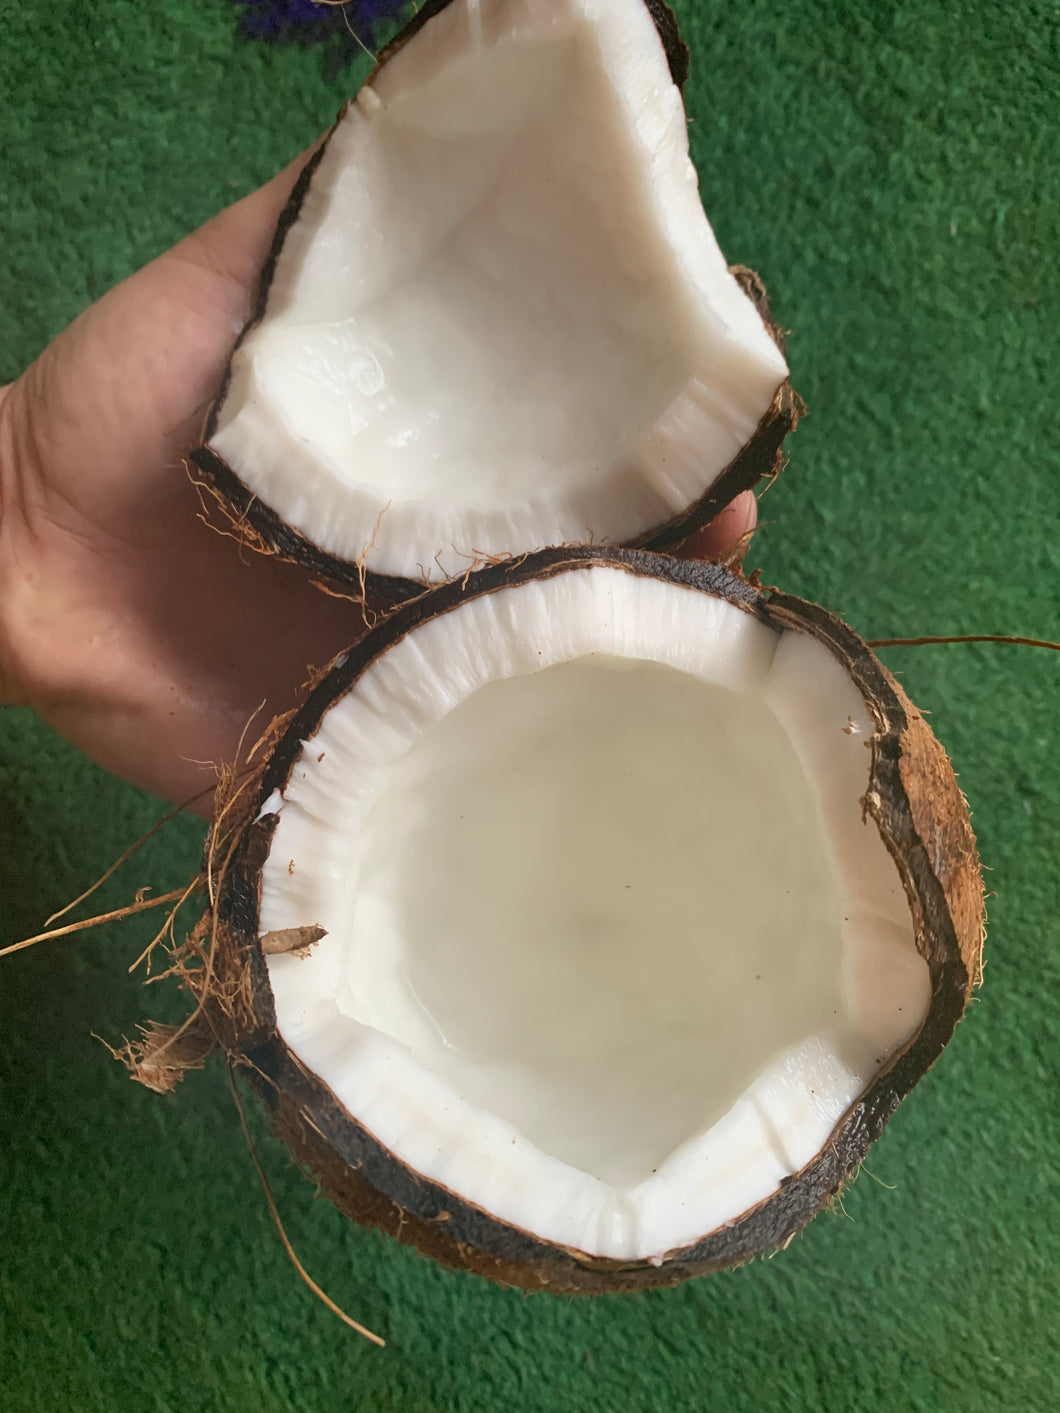 COCONUT | BROWN COCO DOMINICAN REPUBLIC (1 FRUIT)